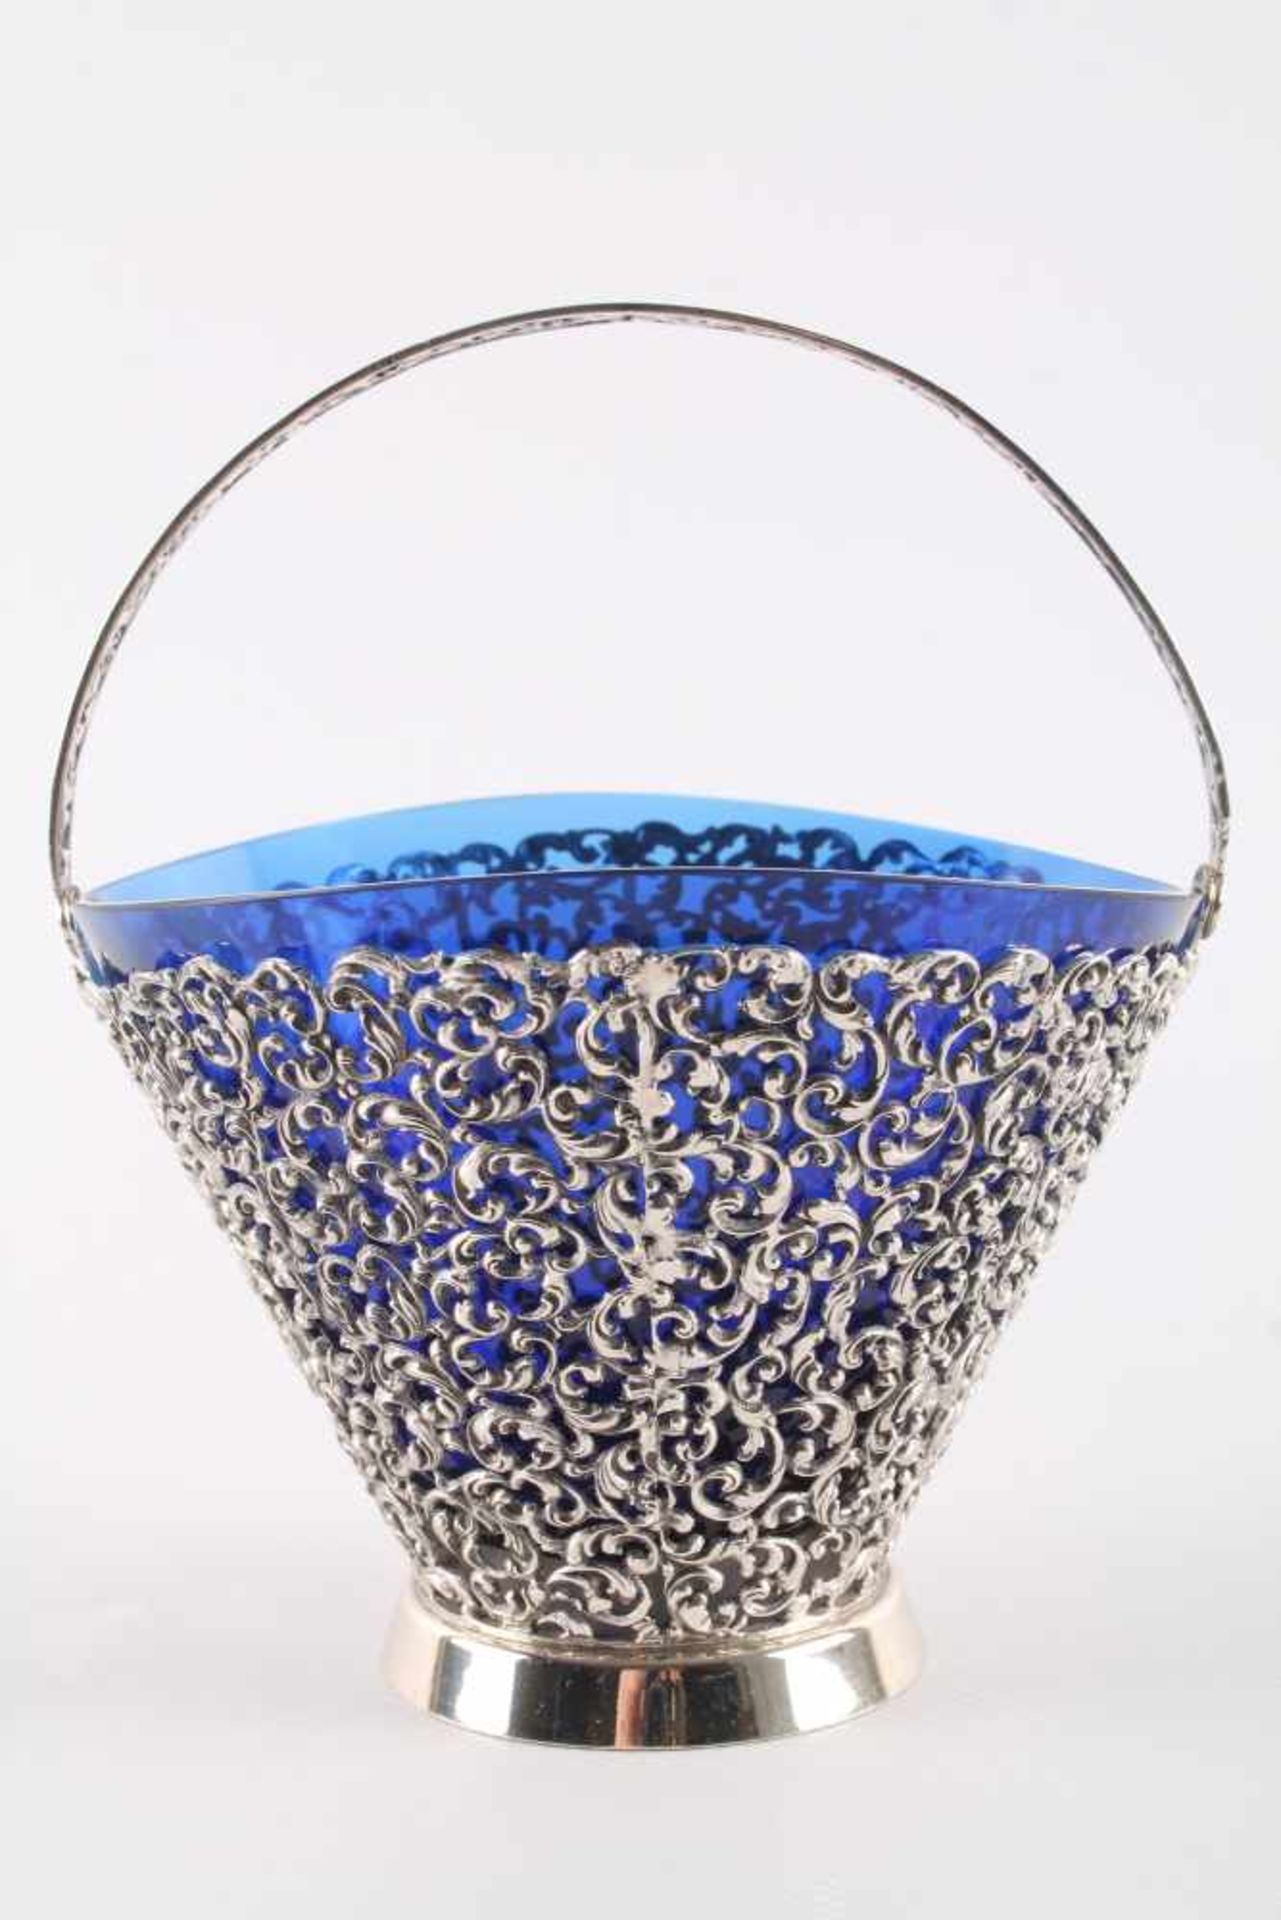 835 Silber - große Zuckerschale mit kobaltblauem Glaseinsatz und Zuckerlöffel, silver sugar bowl - Image 3 of 6